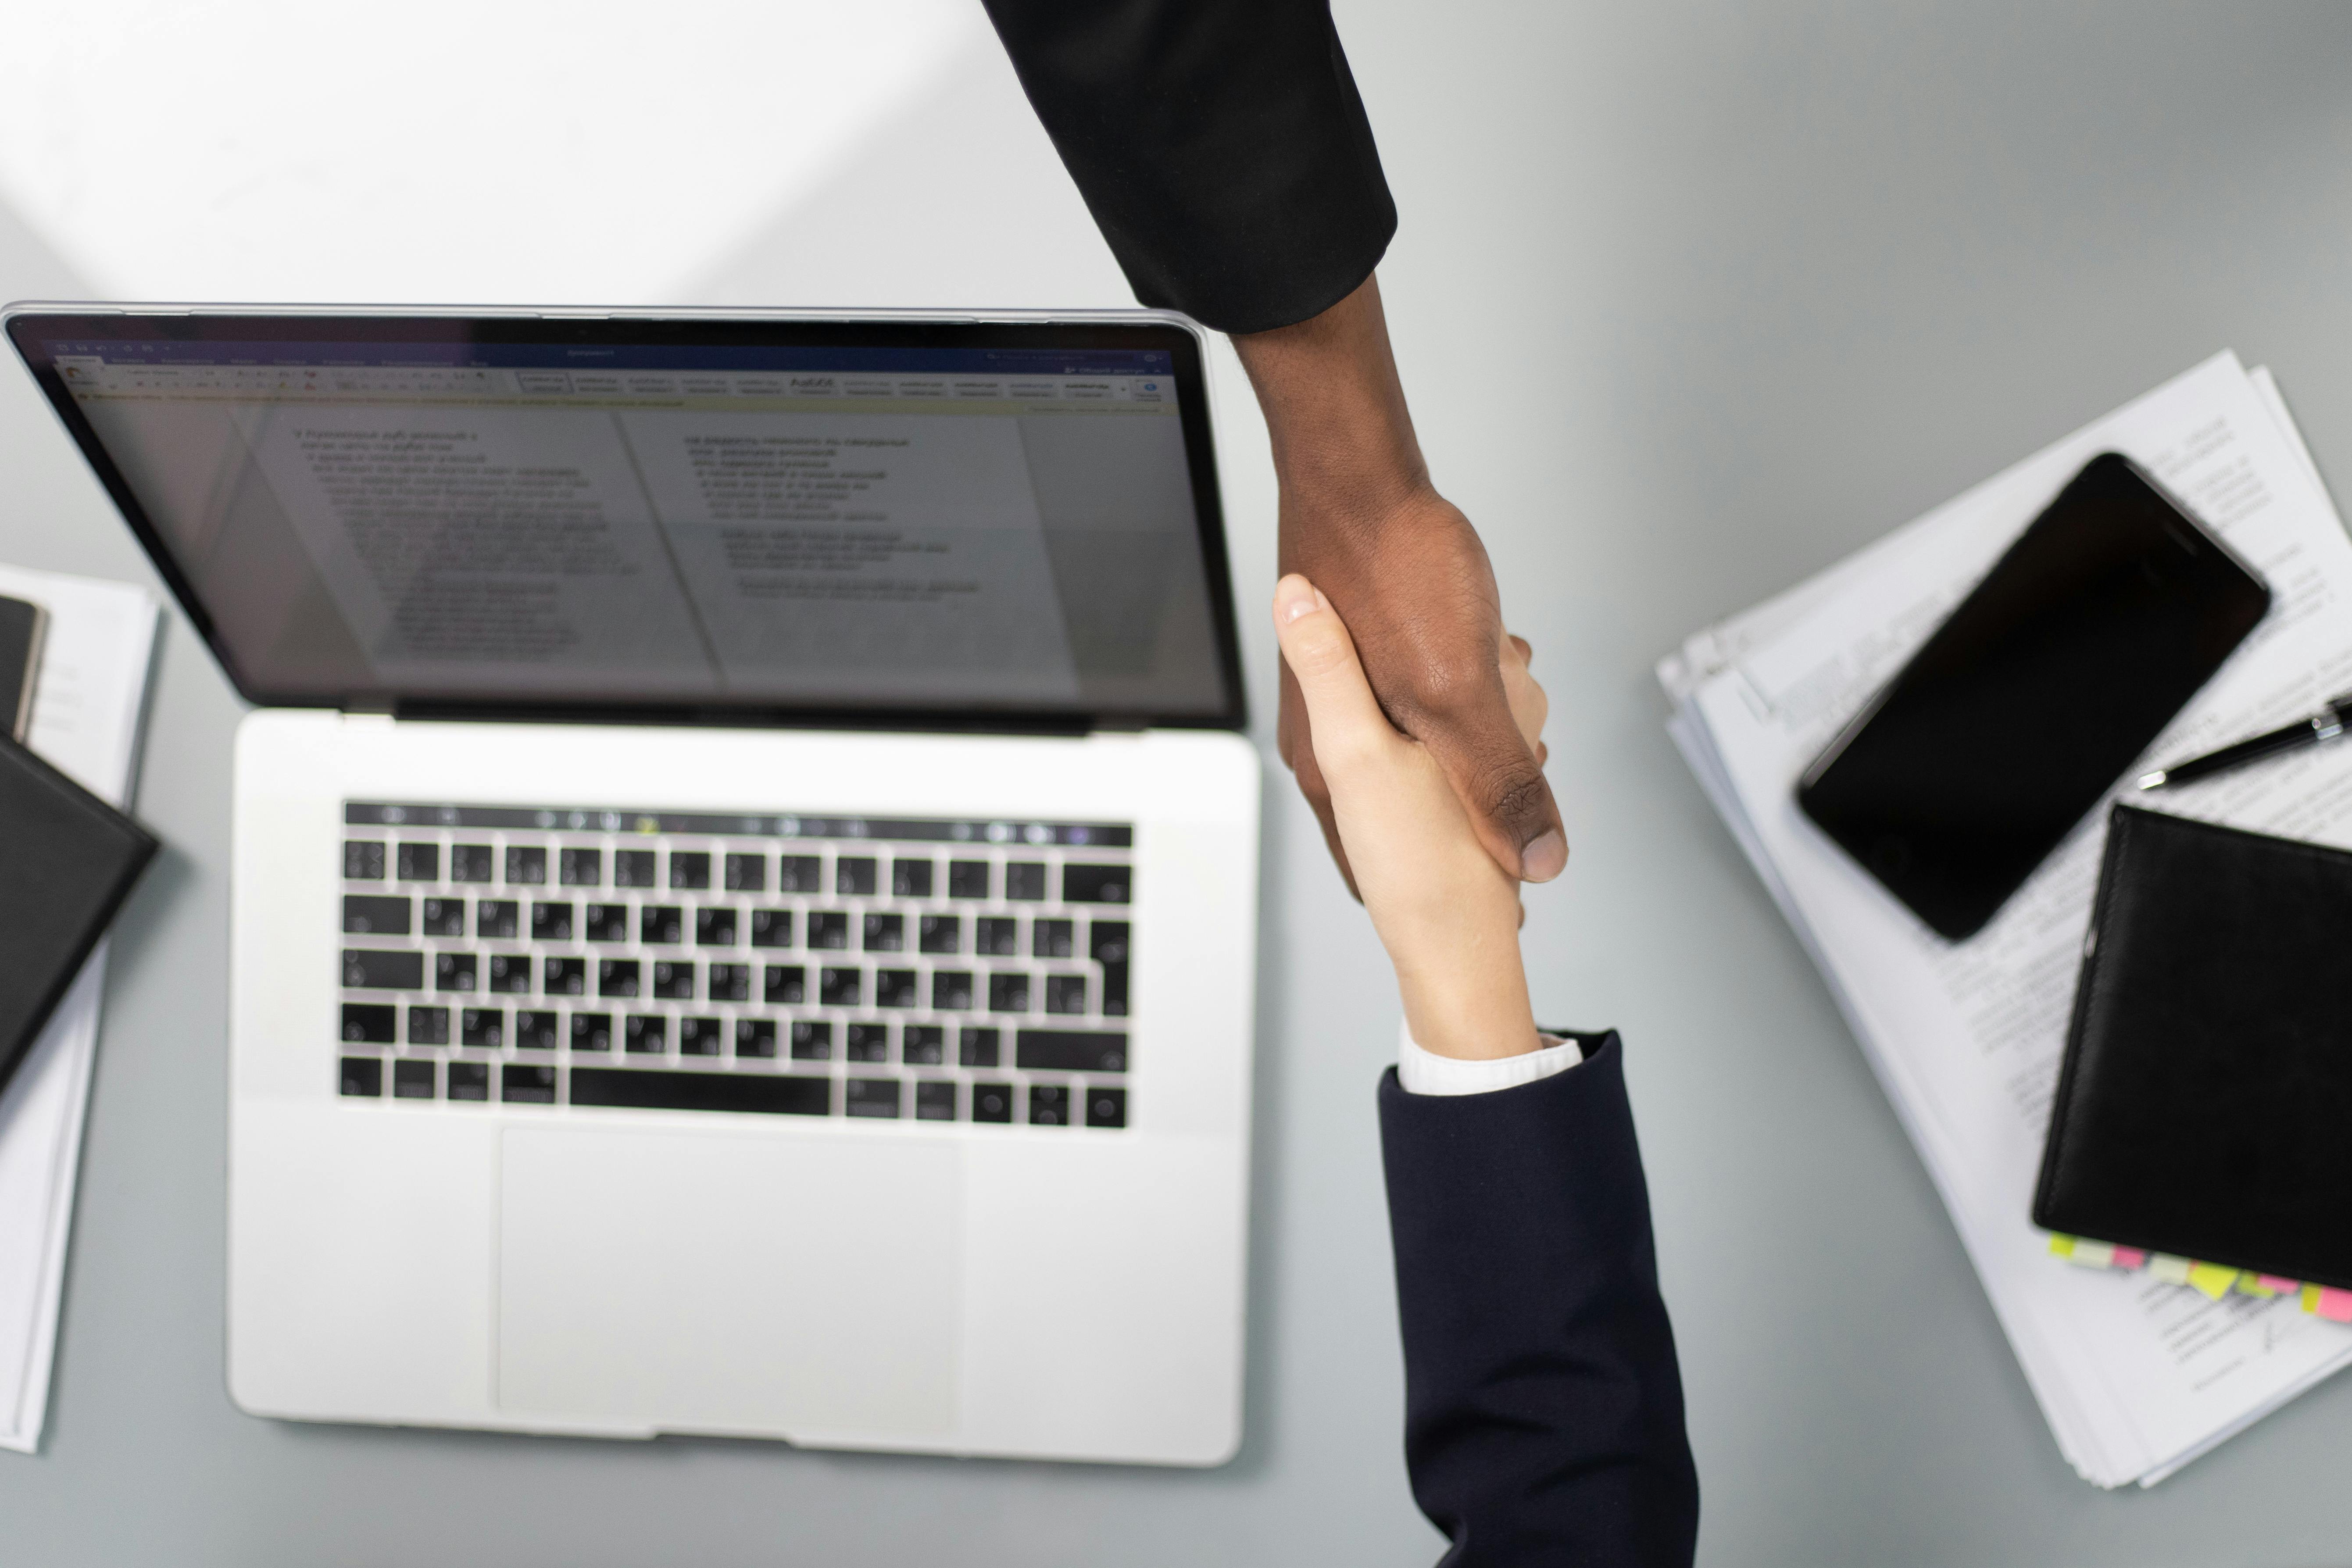 Deux personnes se serrent la main au-dessus d'un ordinateur portable ouvert, représentant un accord ou une collaboration professionnelle.